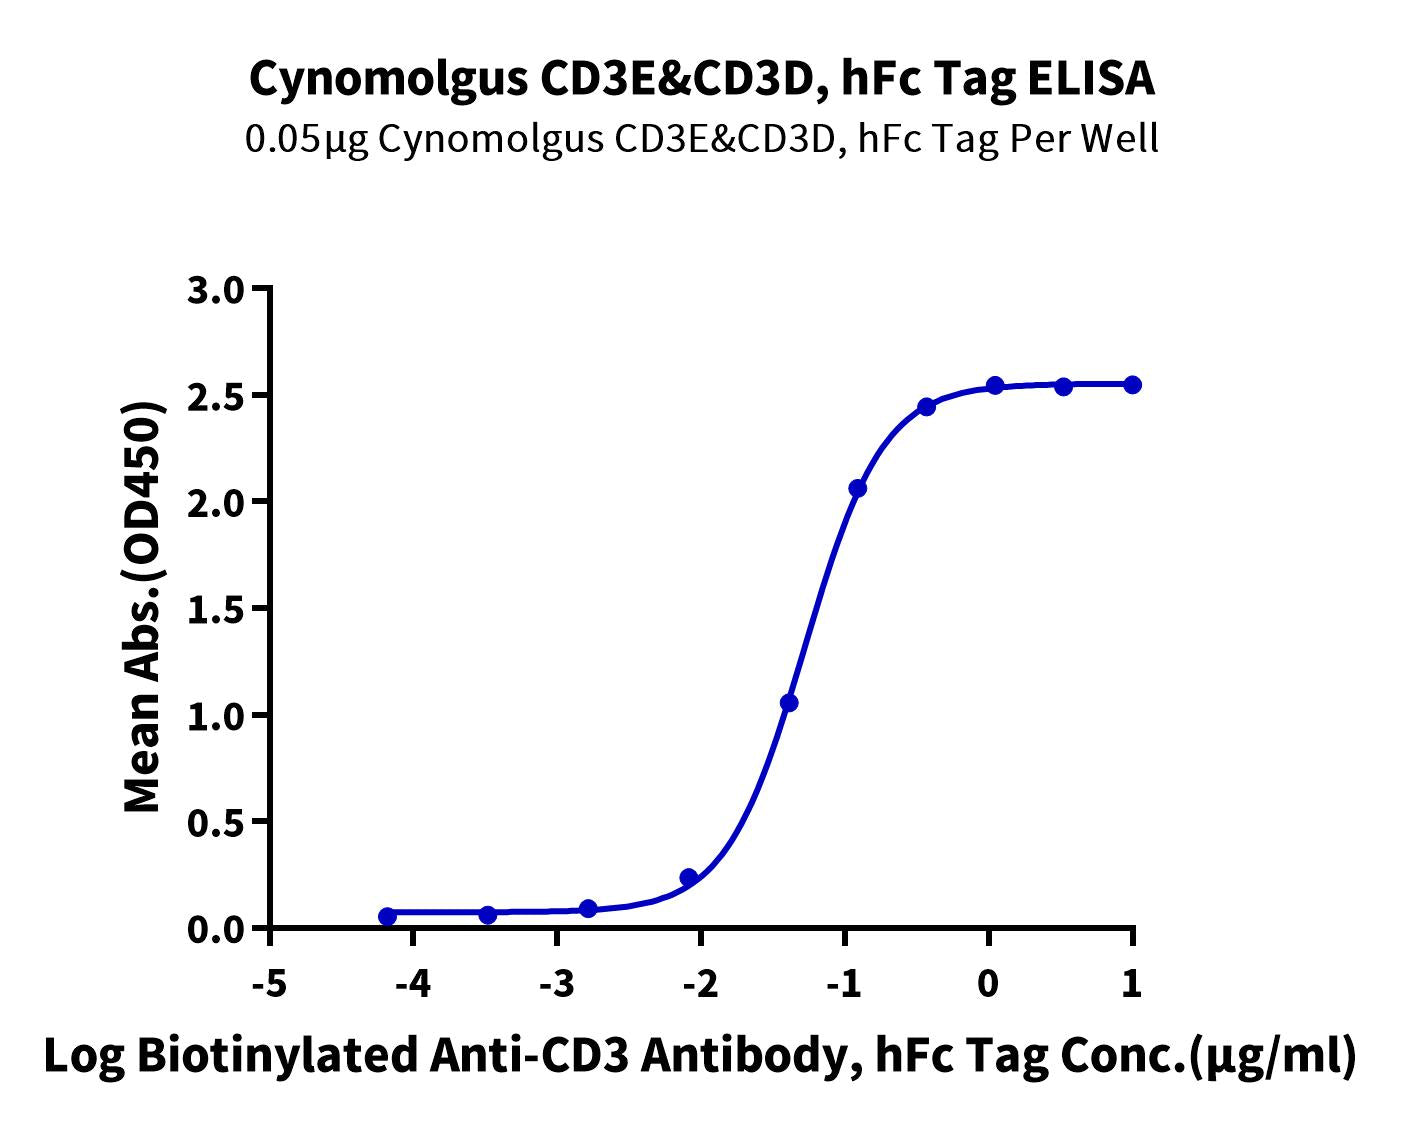 Cynomolgus CD3E&CD3D/CD3 epsilon&CD3 delta Protein (CD3-CM201)